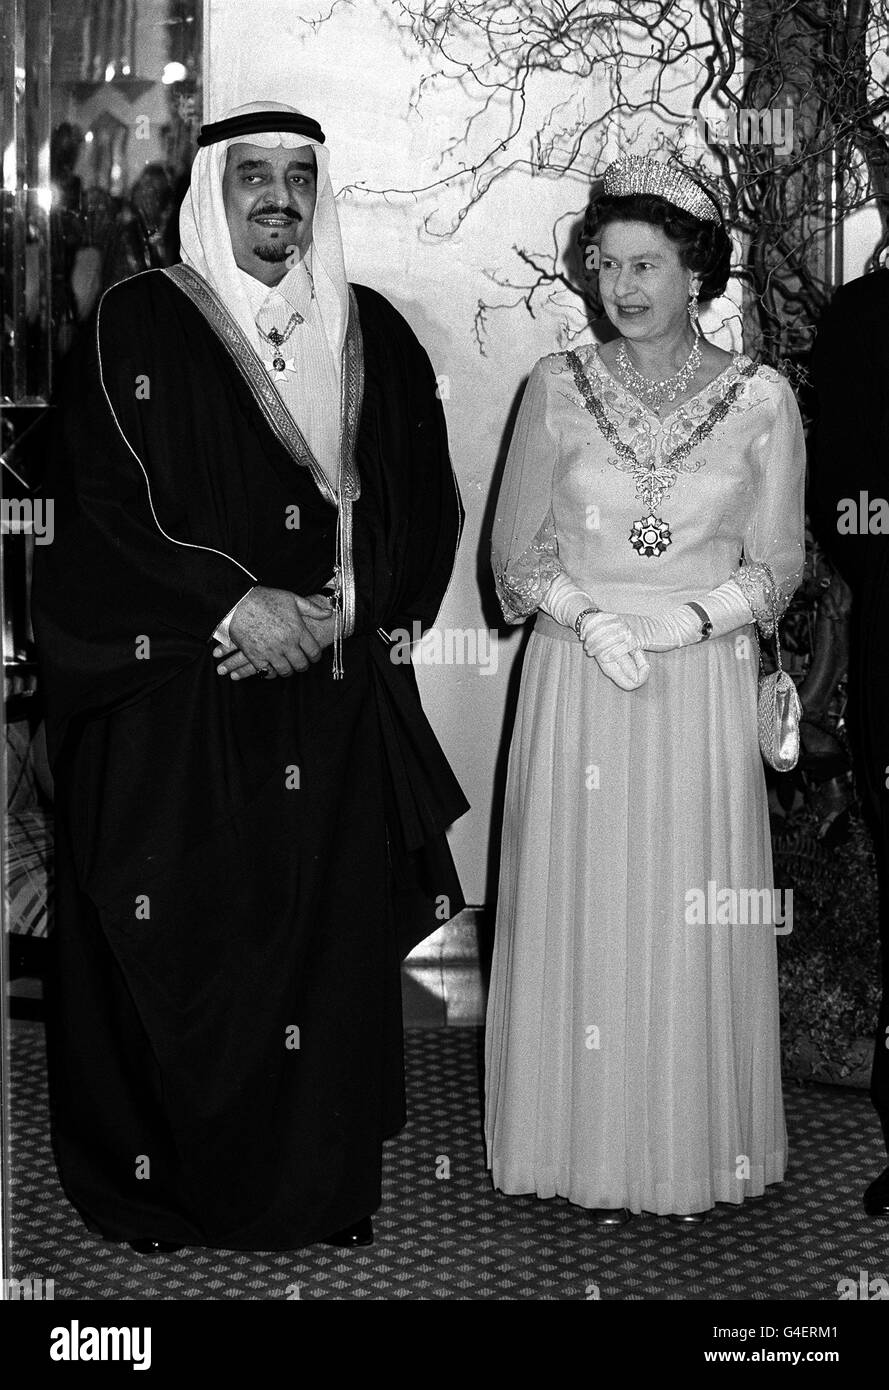 La regina Elisabetta II è accolta dal re Fahd dell'Arabia Saudita al Claridge's Hotel dove ha dato un banchetto. Foto Stock